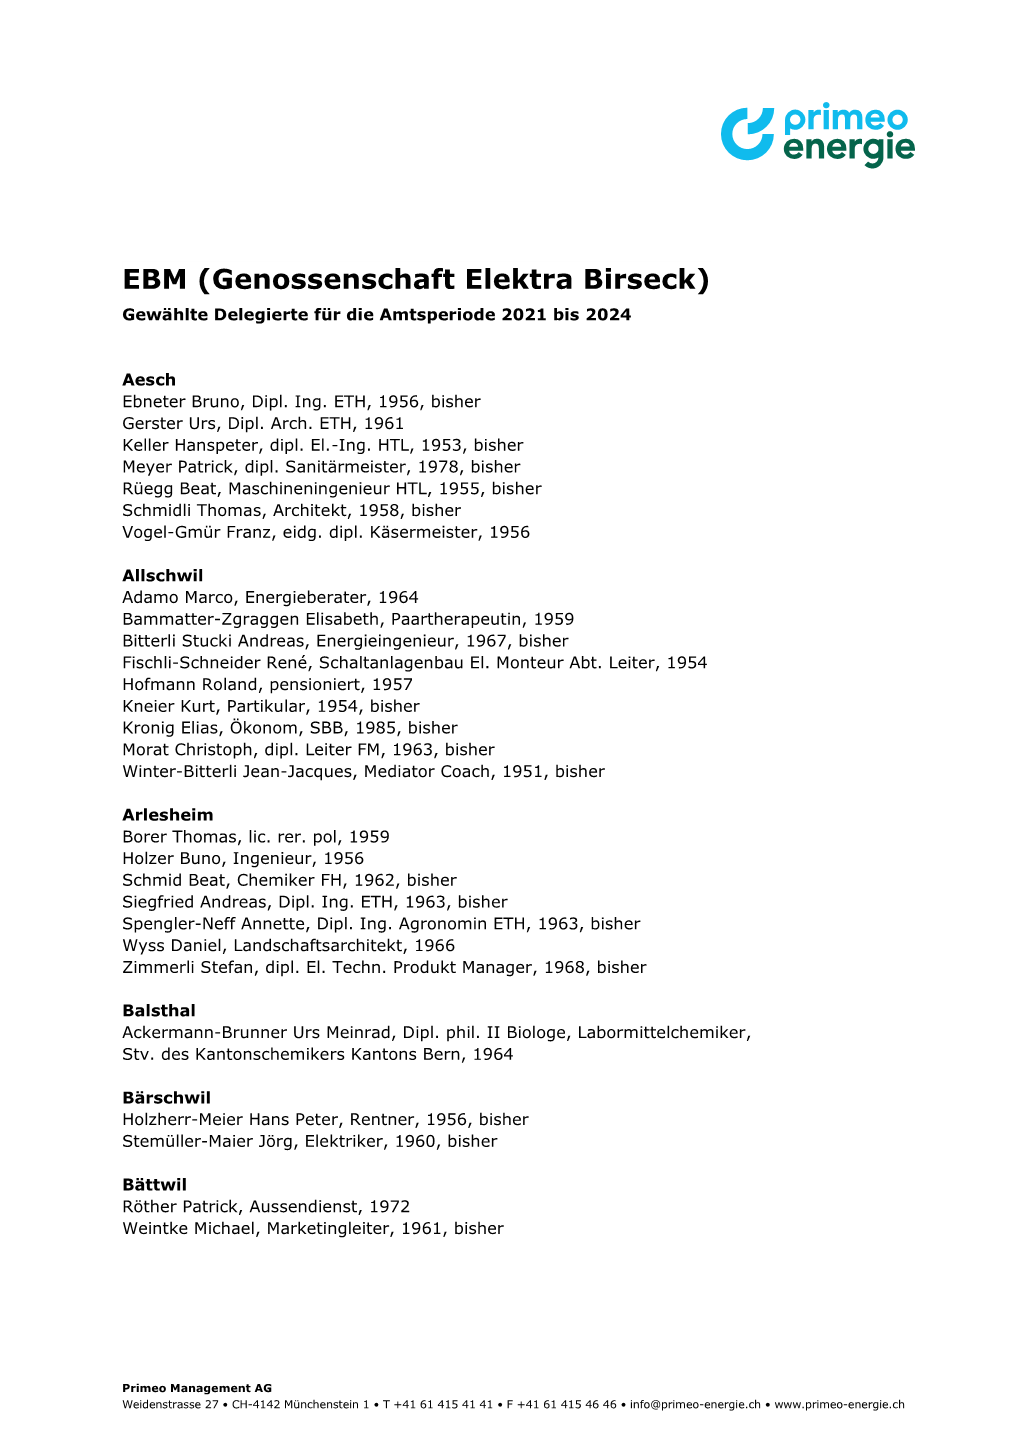 EBM (Genossenschaft Elektra Birseck) Gewählte Delegierte Für Die Amtsperiode 2021 Bis 2024